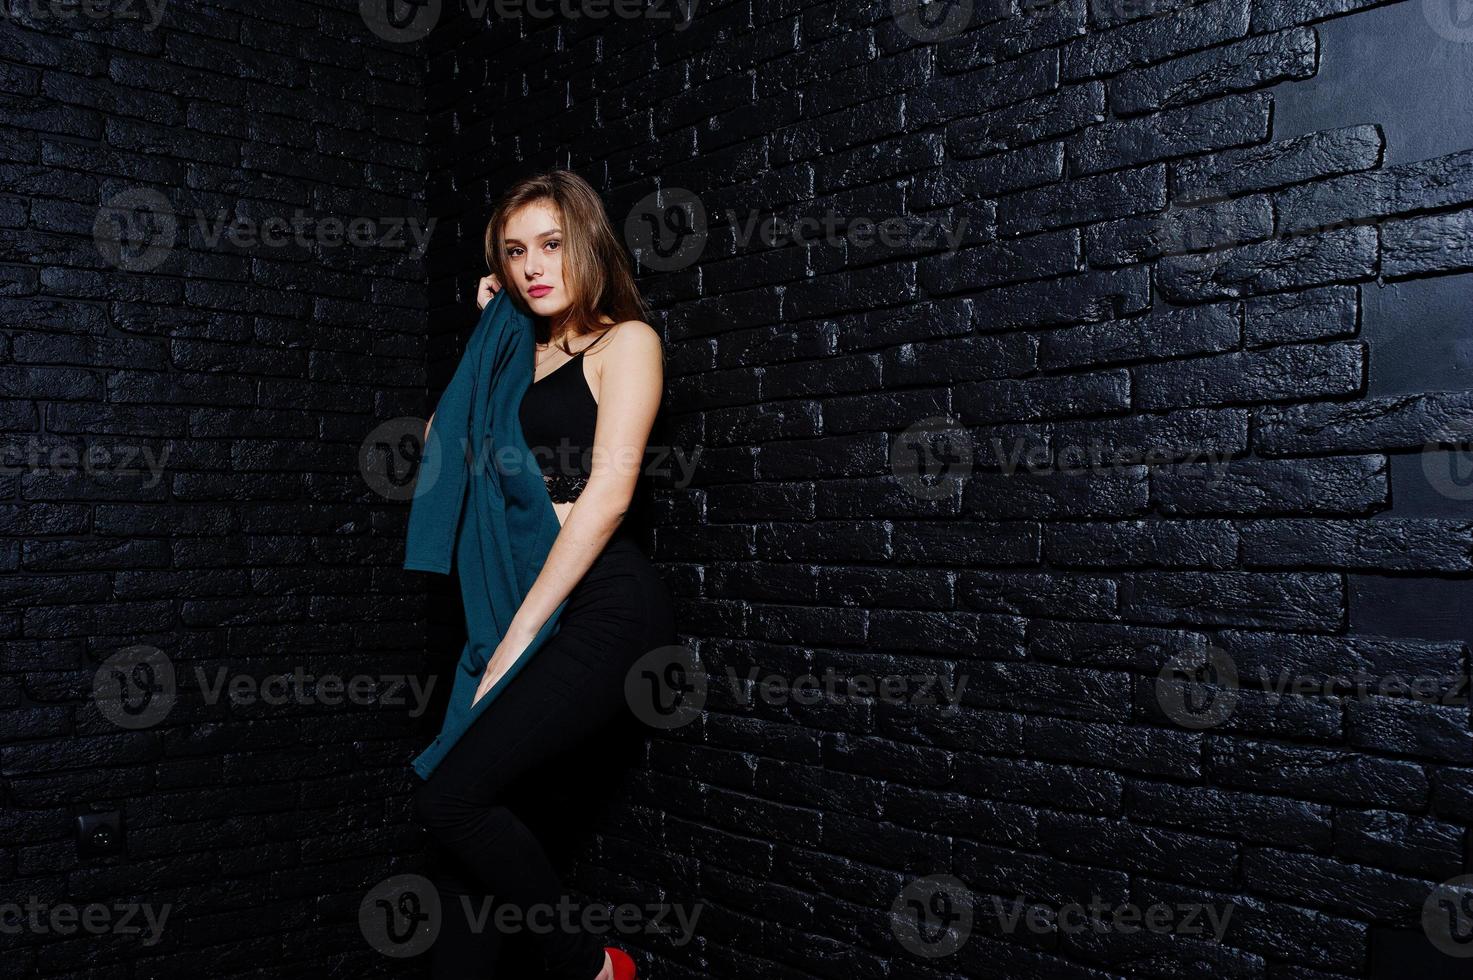 Handsome brunette girl wear on black, posing at studio against dark brick wall. Studio model portrait. photo